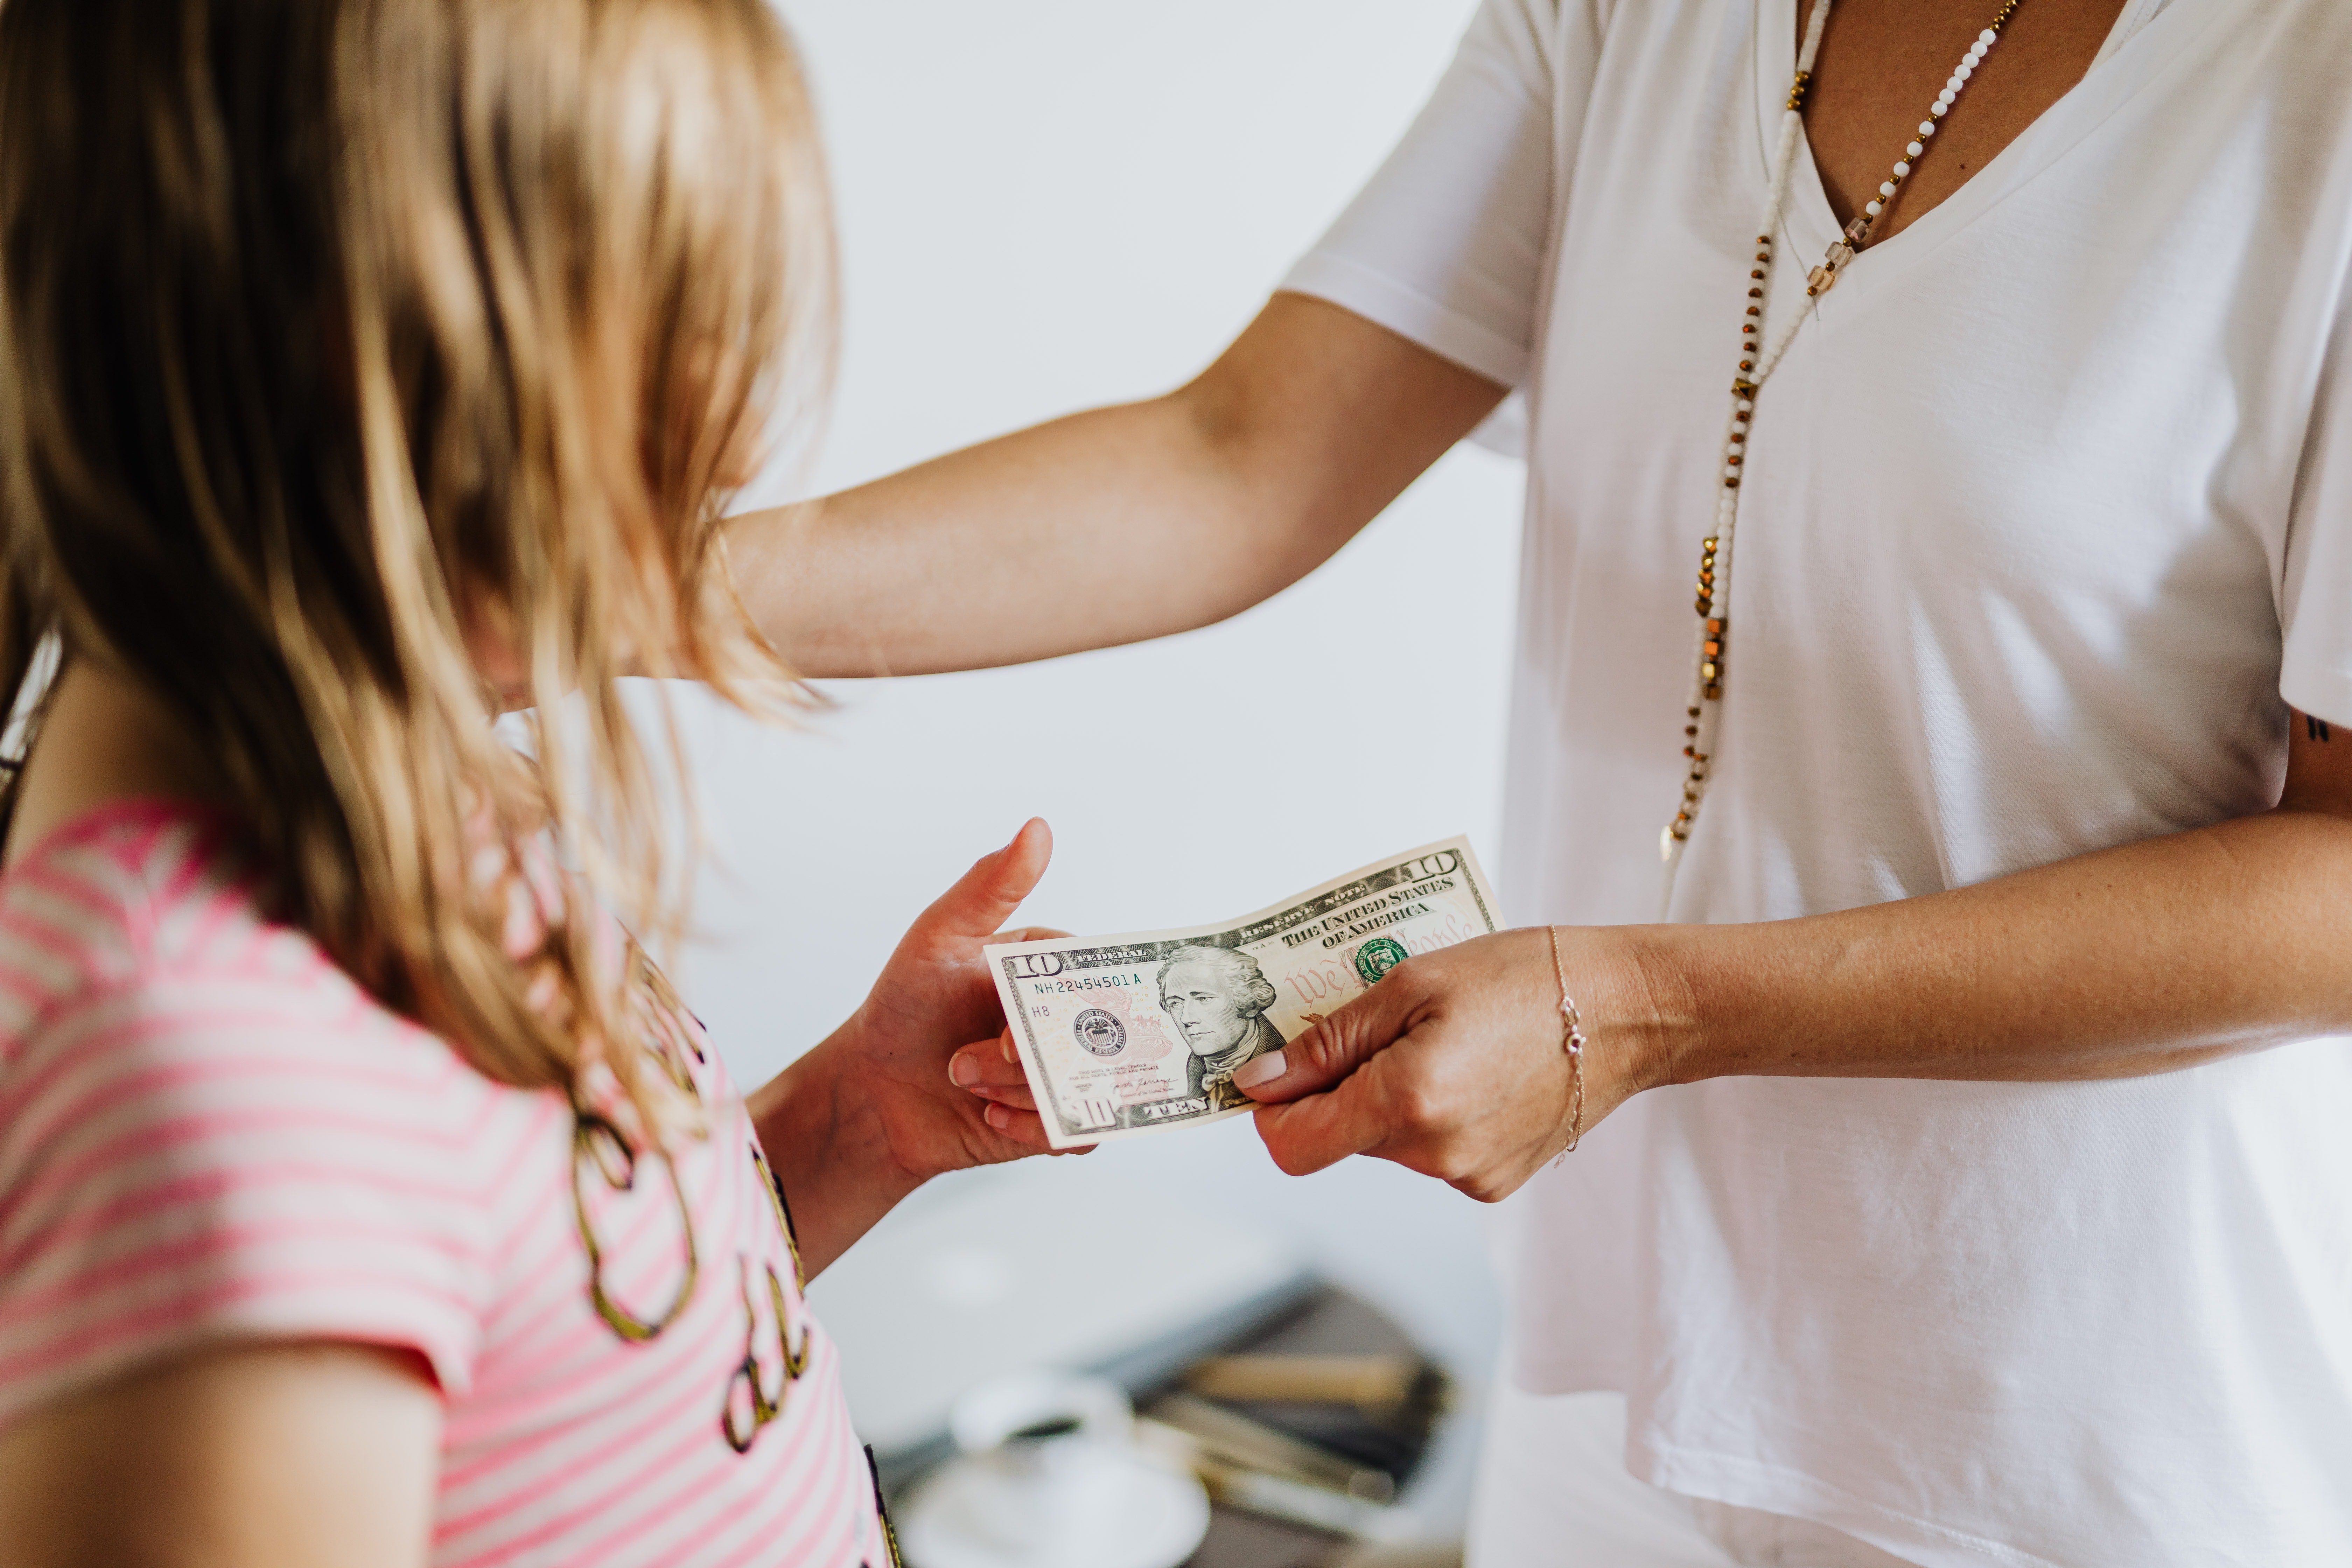 Eine Person auf Reddit behauptete, sie verachte Eltern, die das Geld ihrer Kinder kontrollieren. | Quelle: Pexels